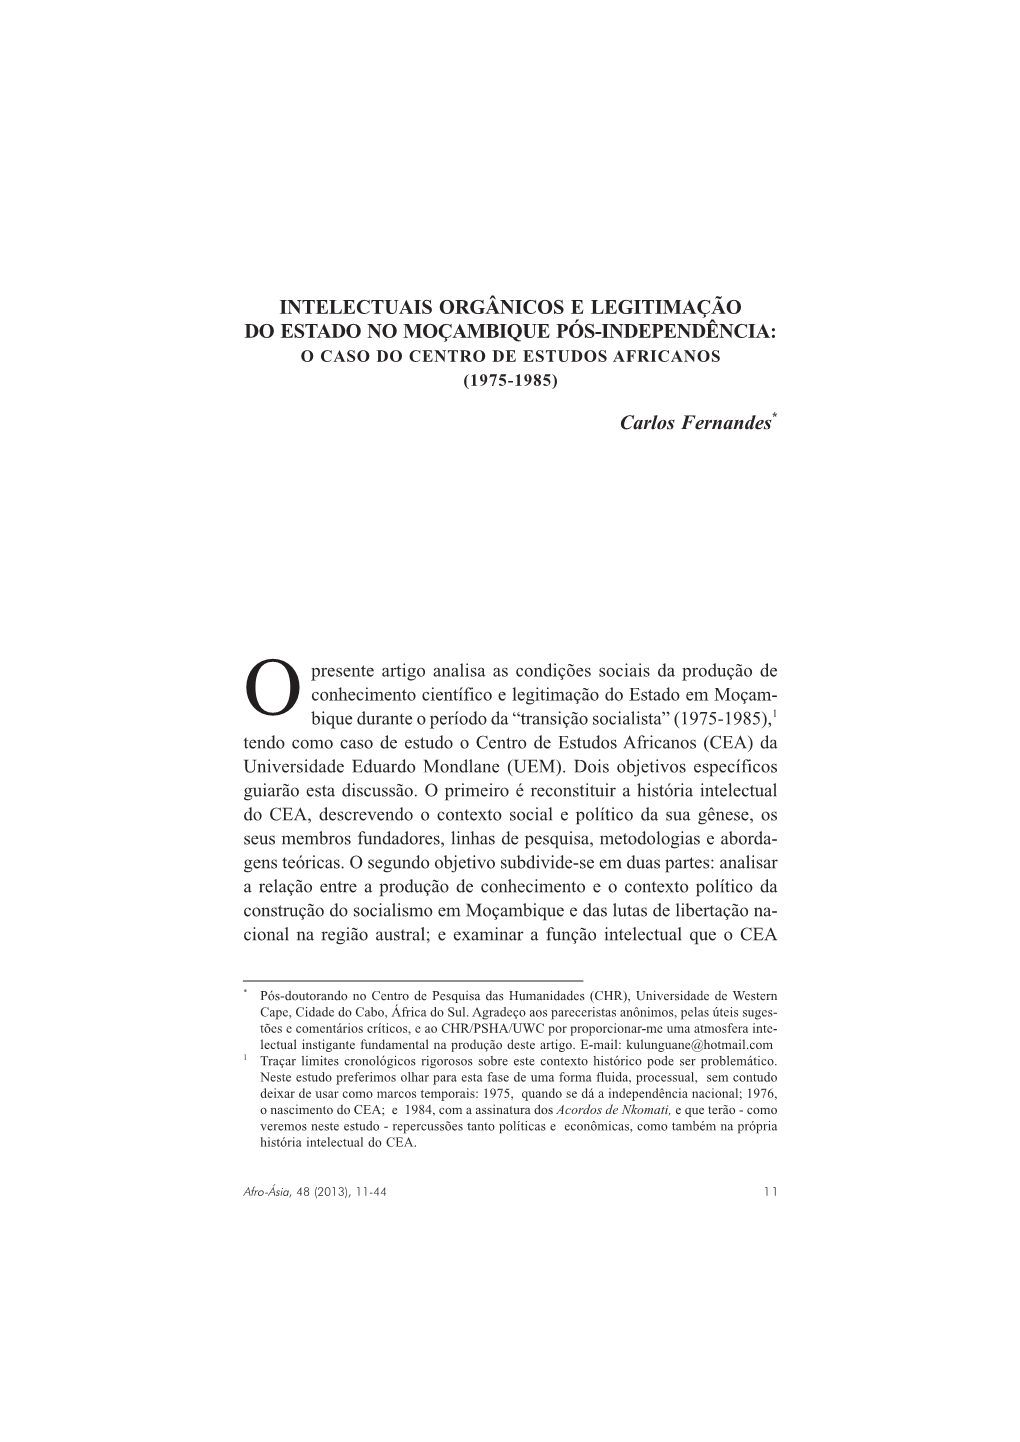 Intelectuais Orgânicos E Legitimação Do Estado No Moçambique Pós-Independência: O Caso Do Centro De Estudos Africanos (1975-1985)